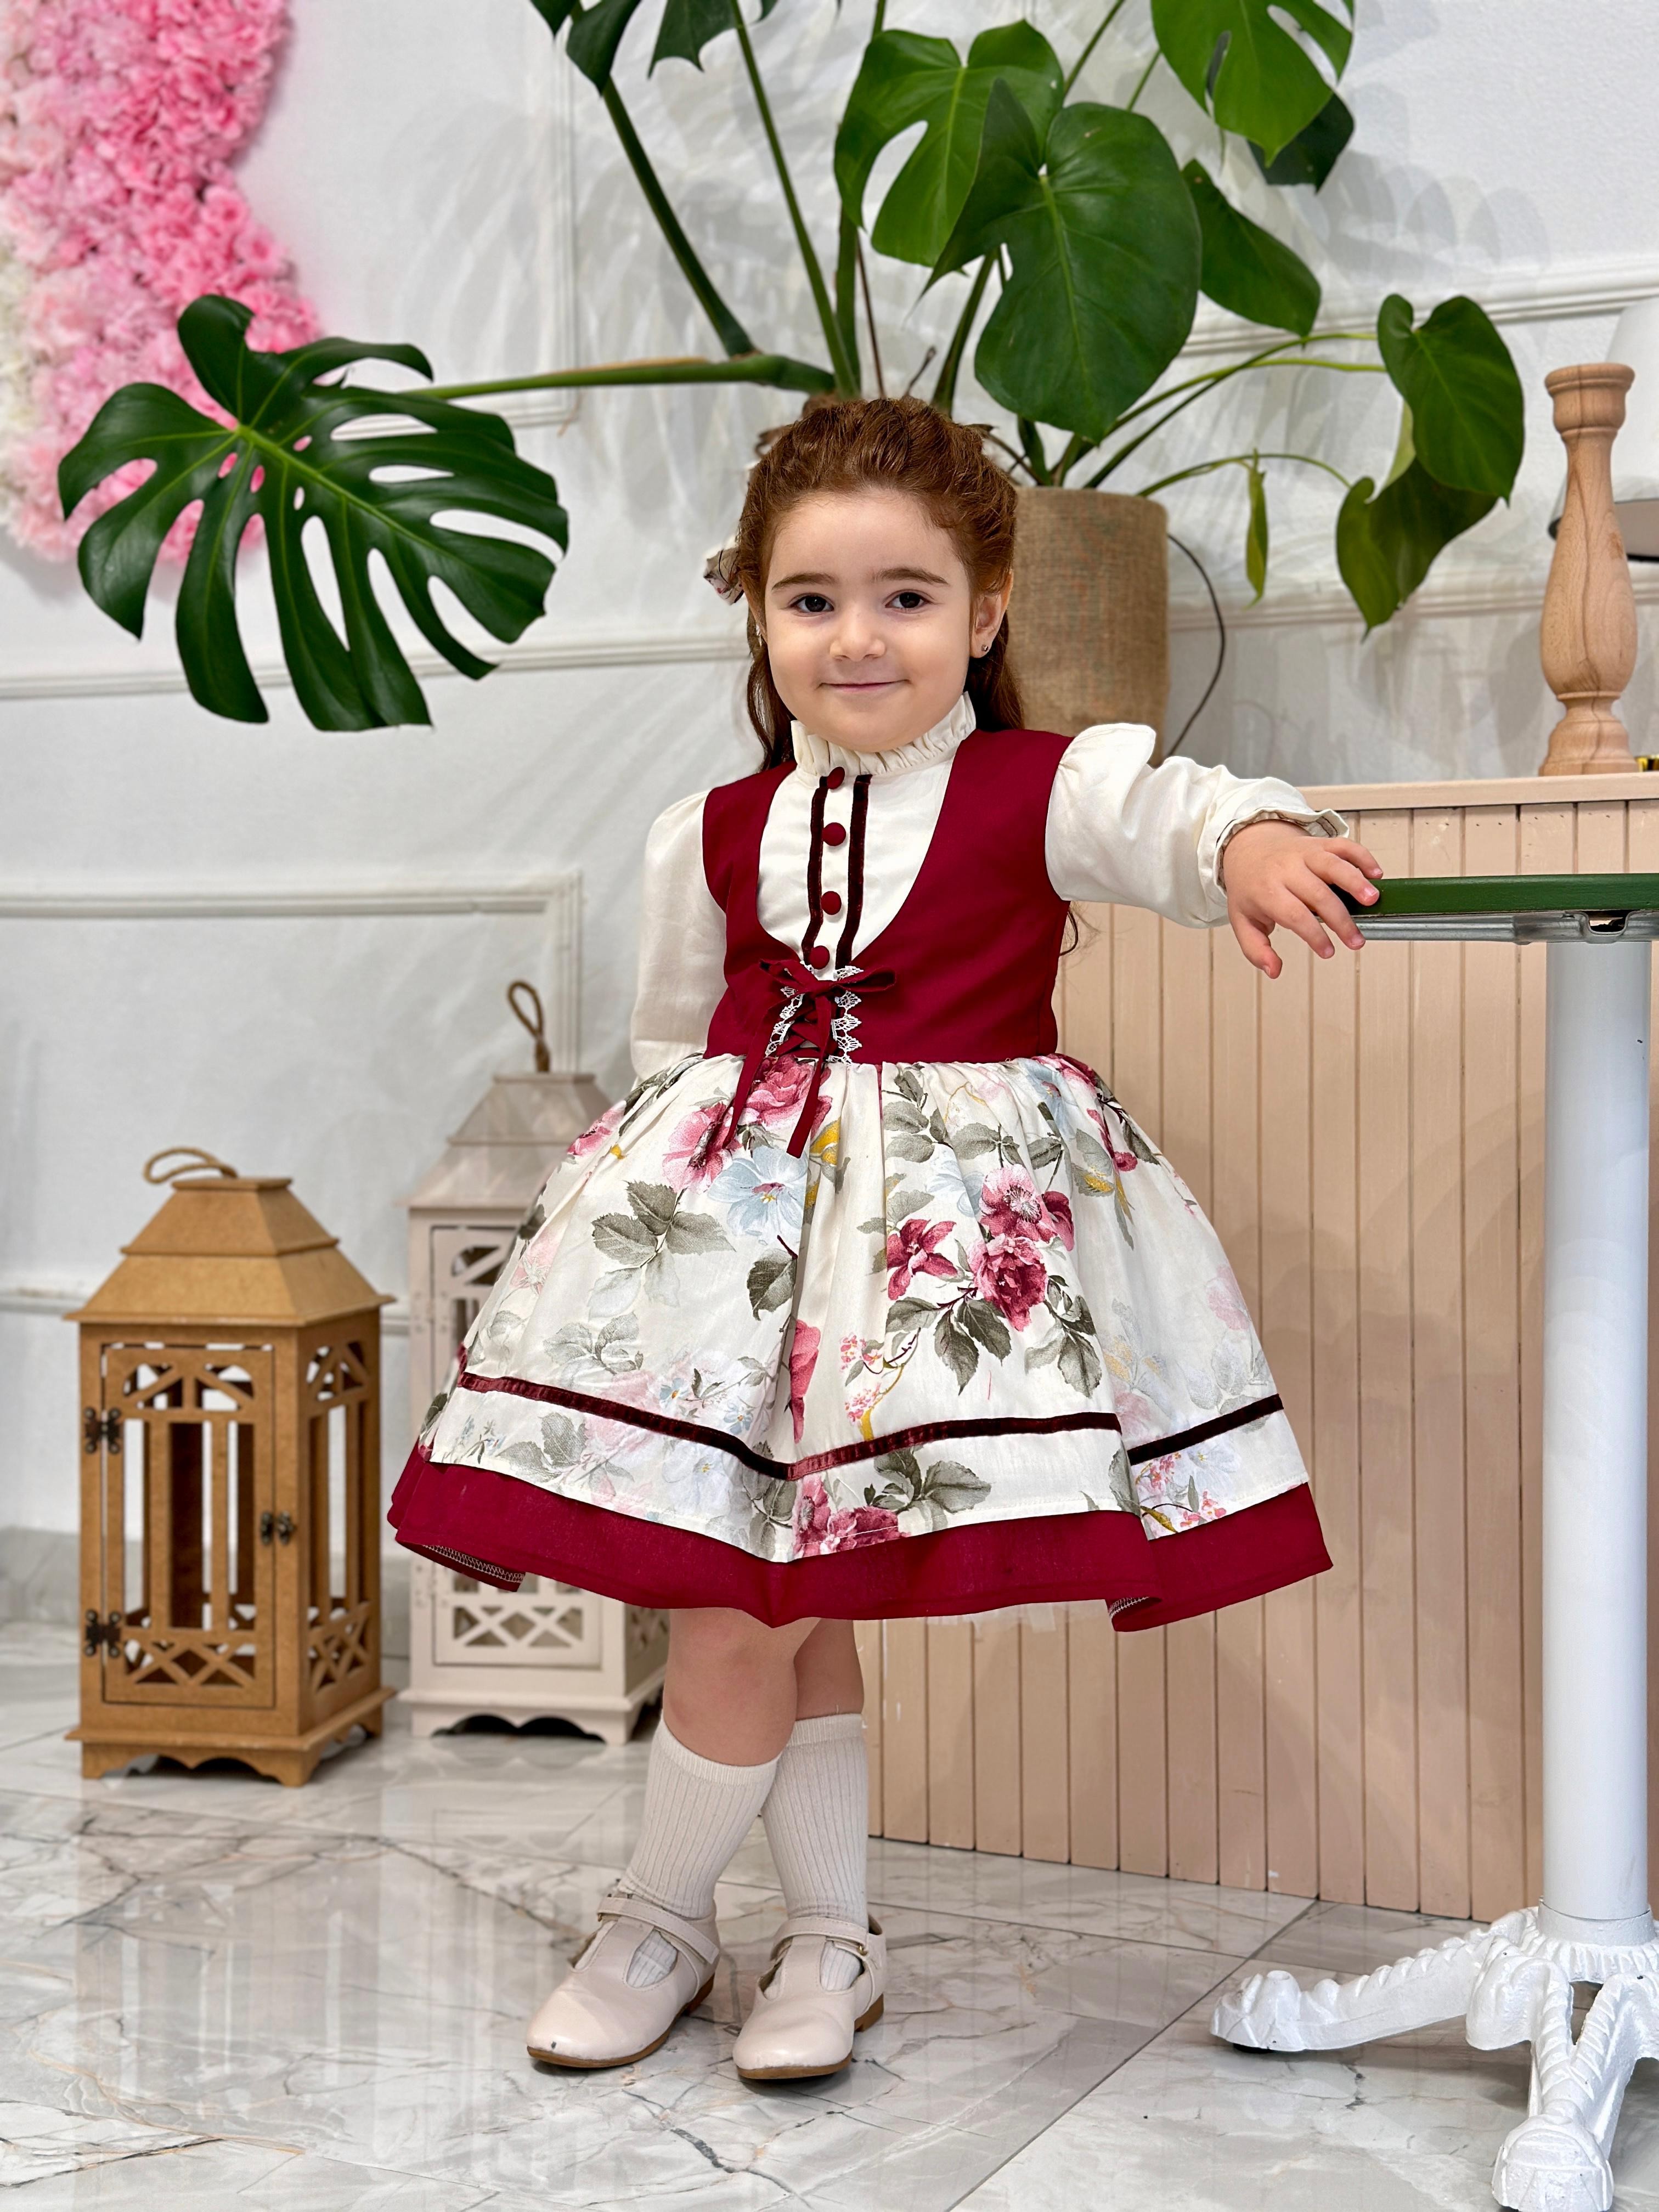 Krem Bordo Vintage Kız Bebek Elbisesi,Doğum günü,fotoğraf çekim elbise,0-10 Yaş Uygun